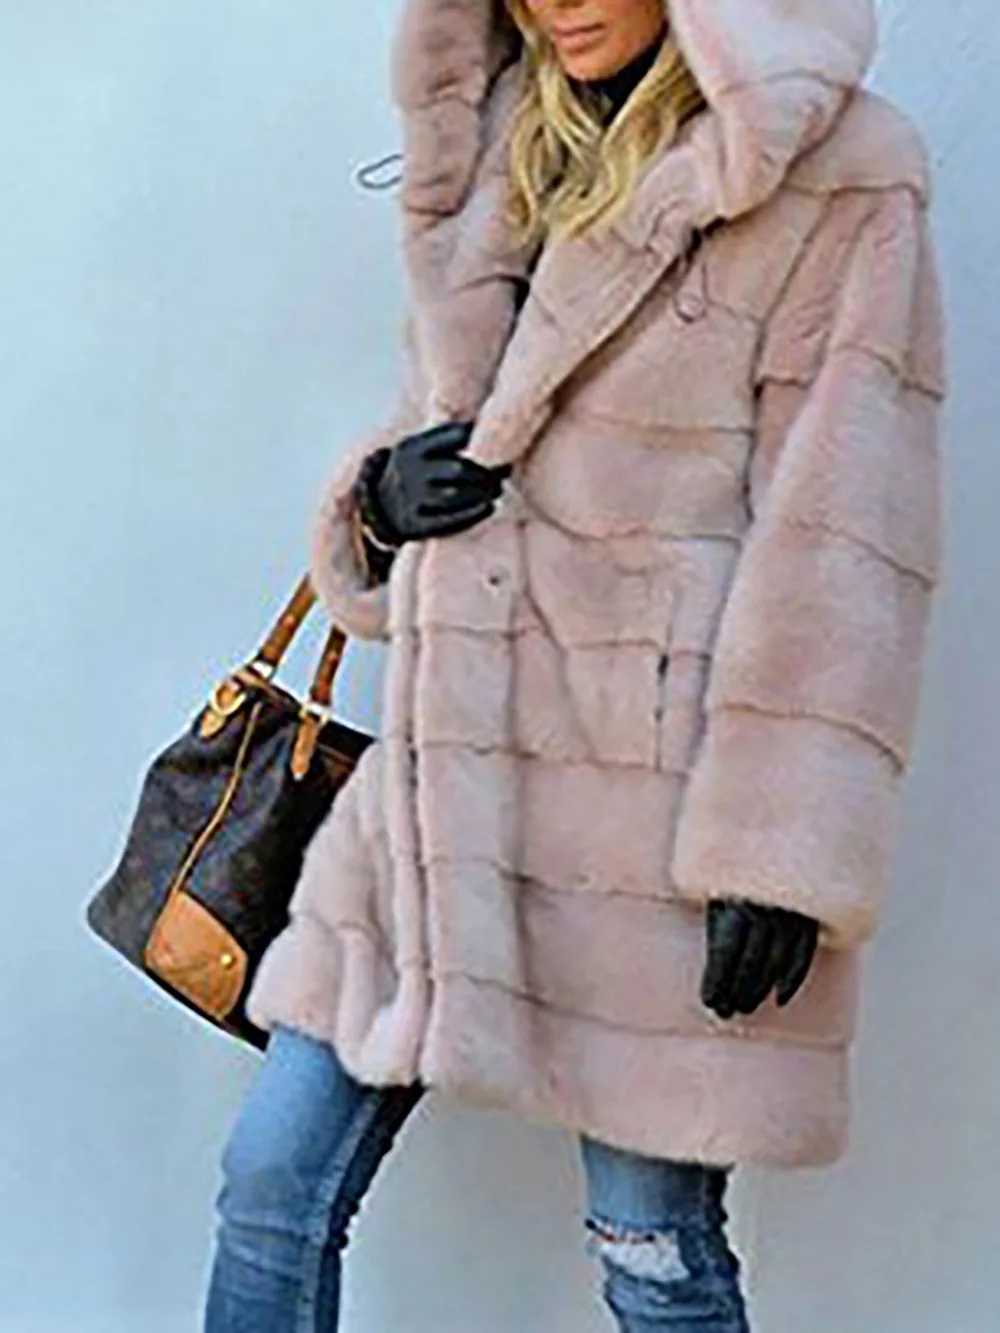 Зимнее пальто женская длинная куртка с большим меховым воротником и капюшоном